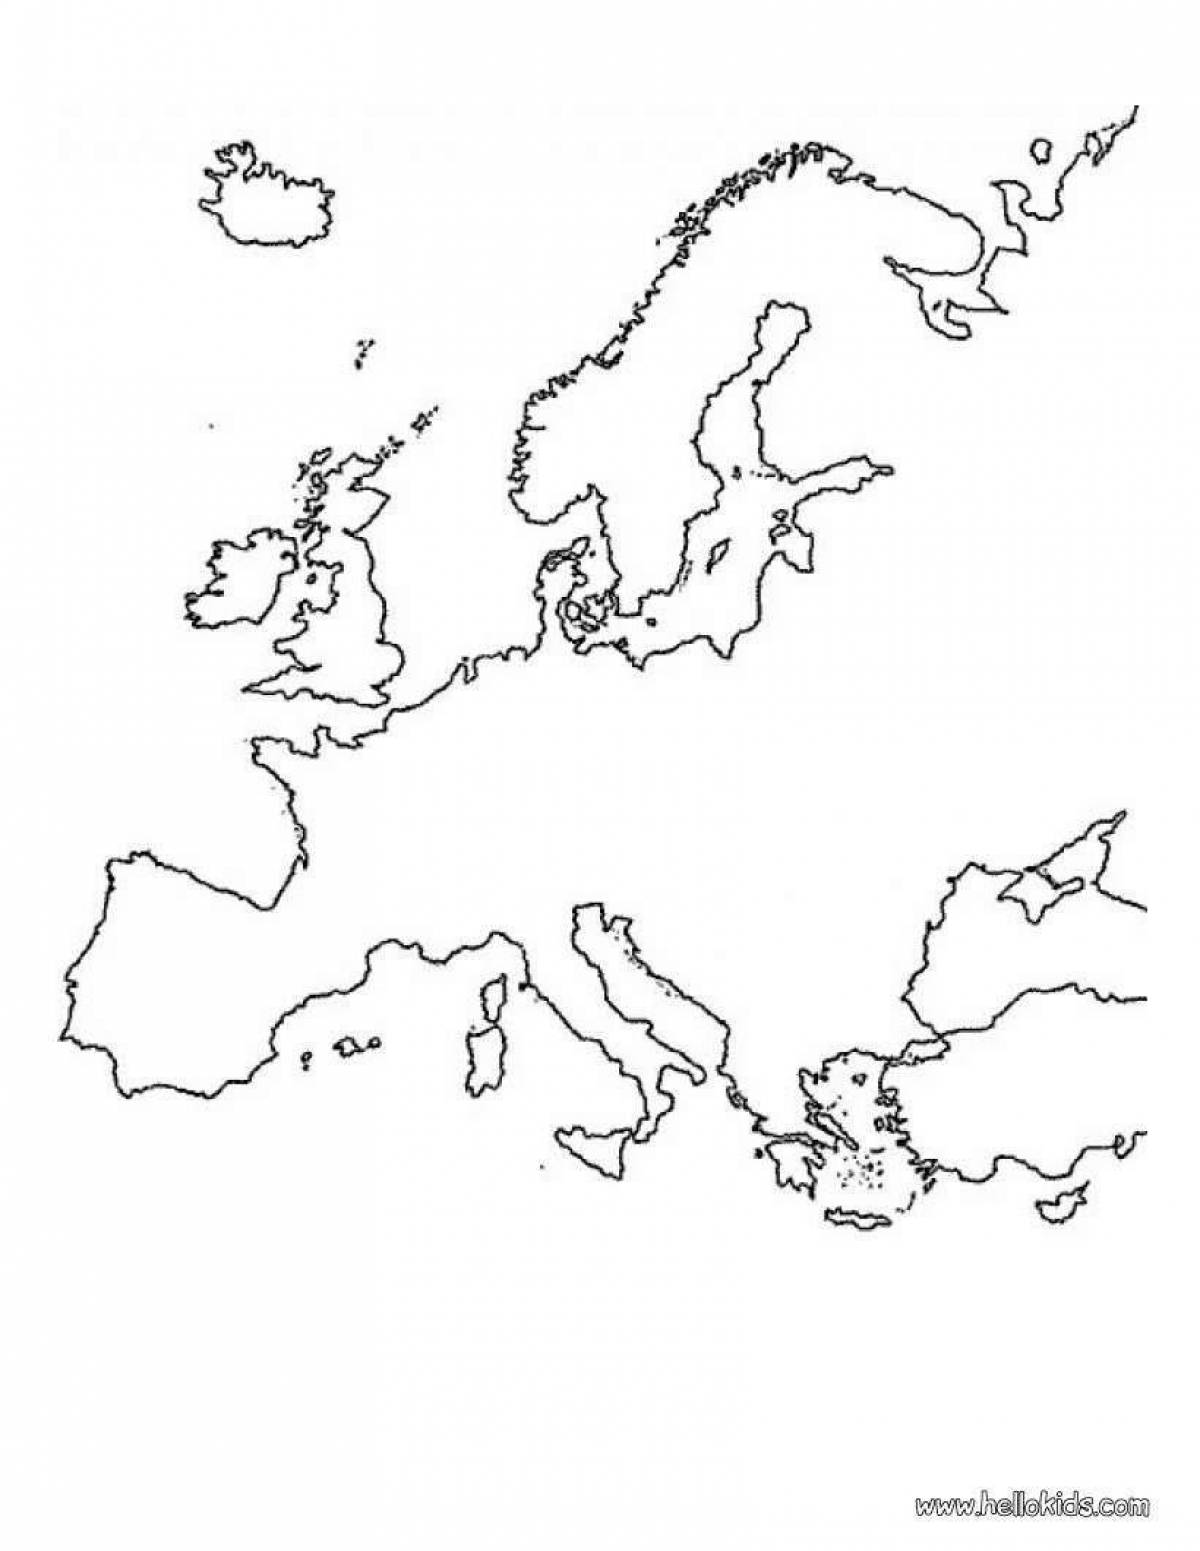 Экзотическая карта европы со странами